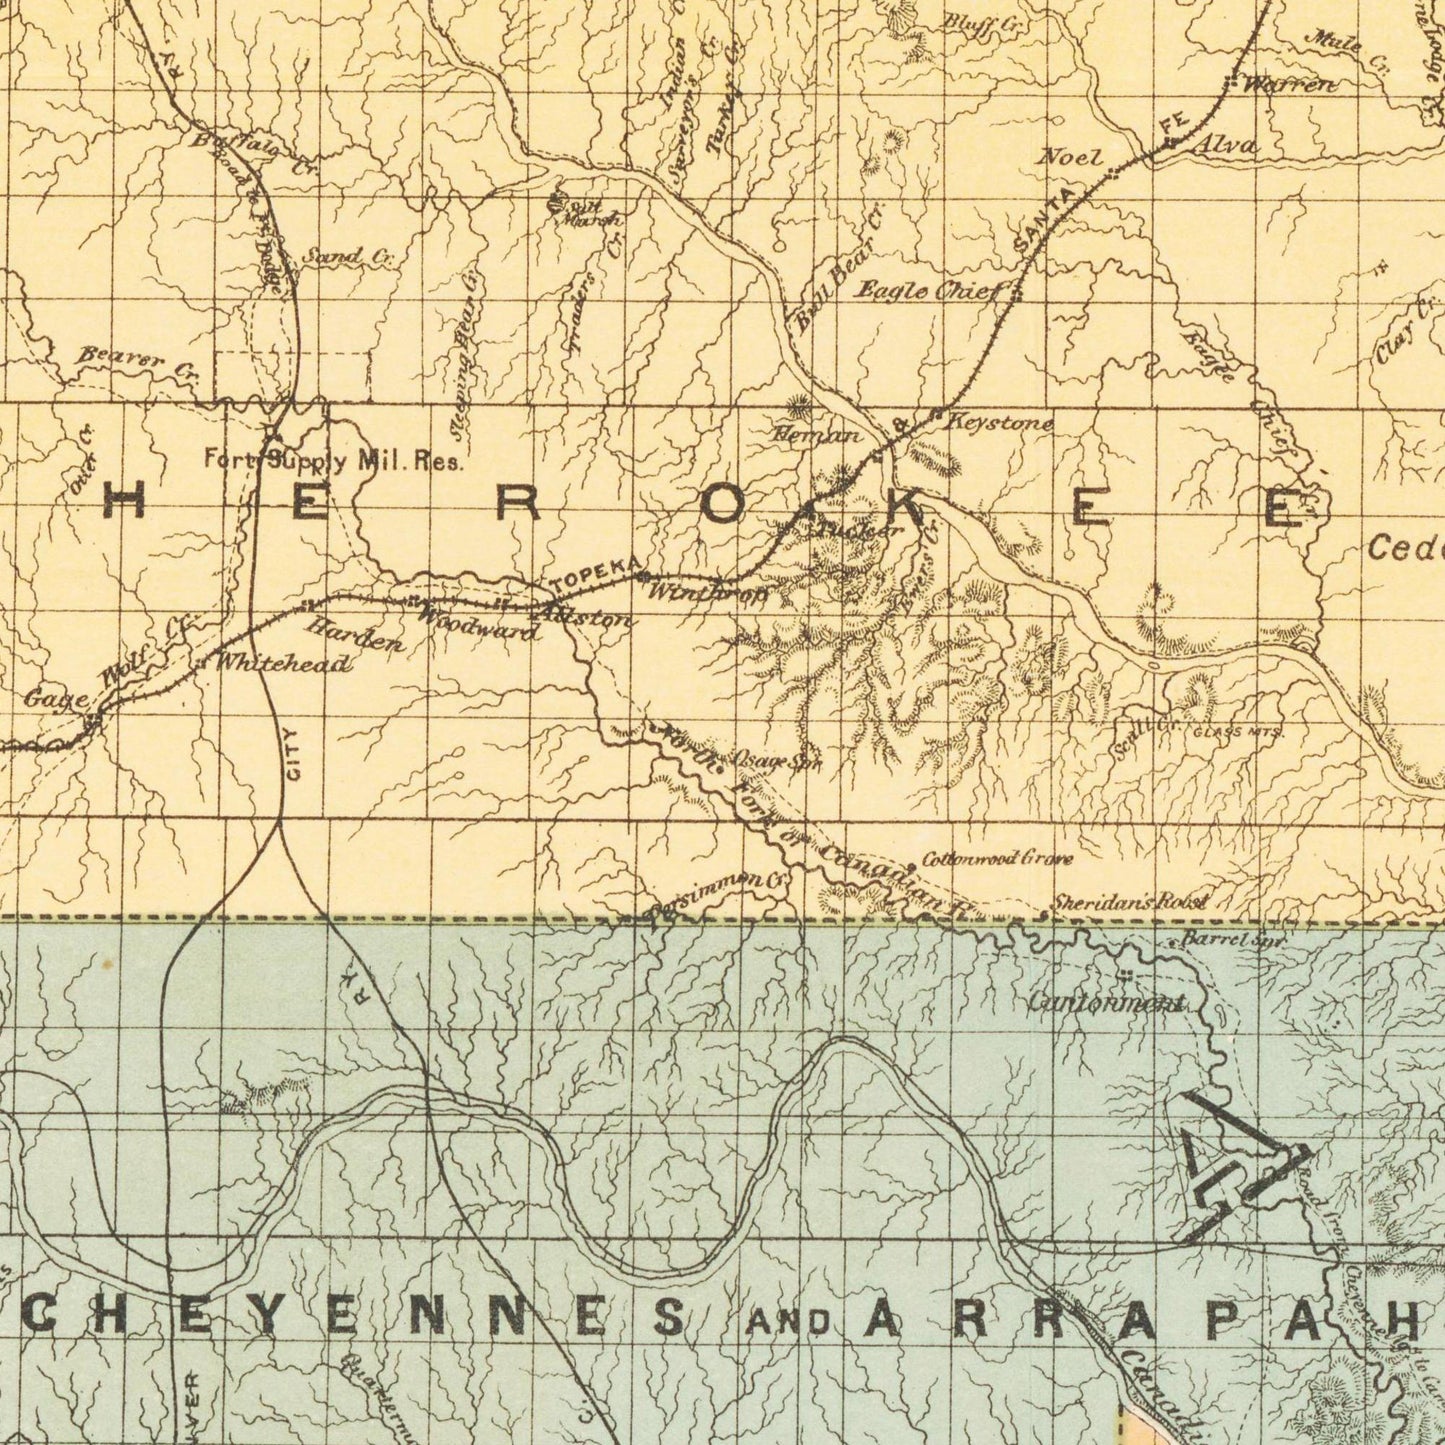 Historische Landkarte Oklahoma um 1890